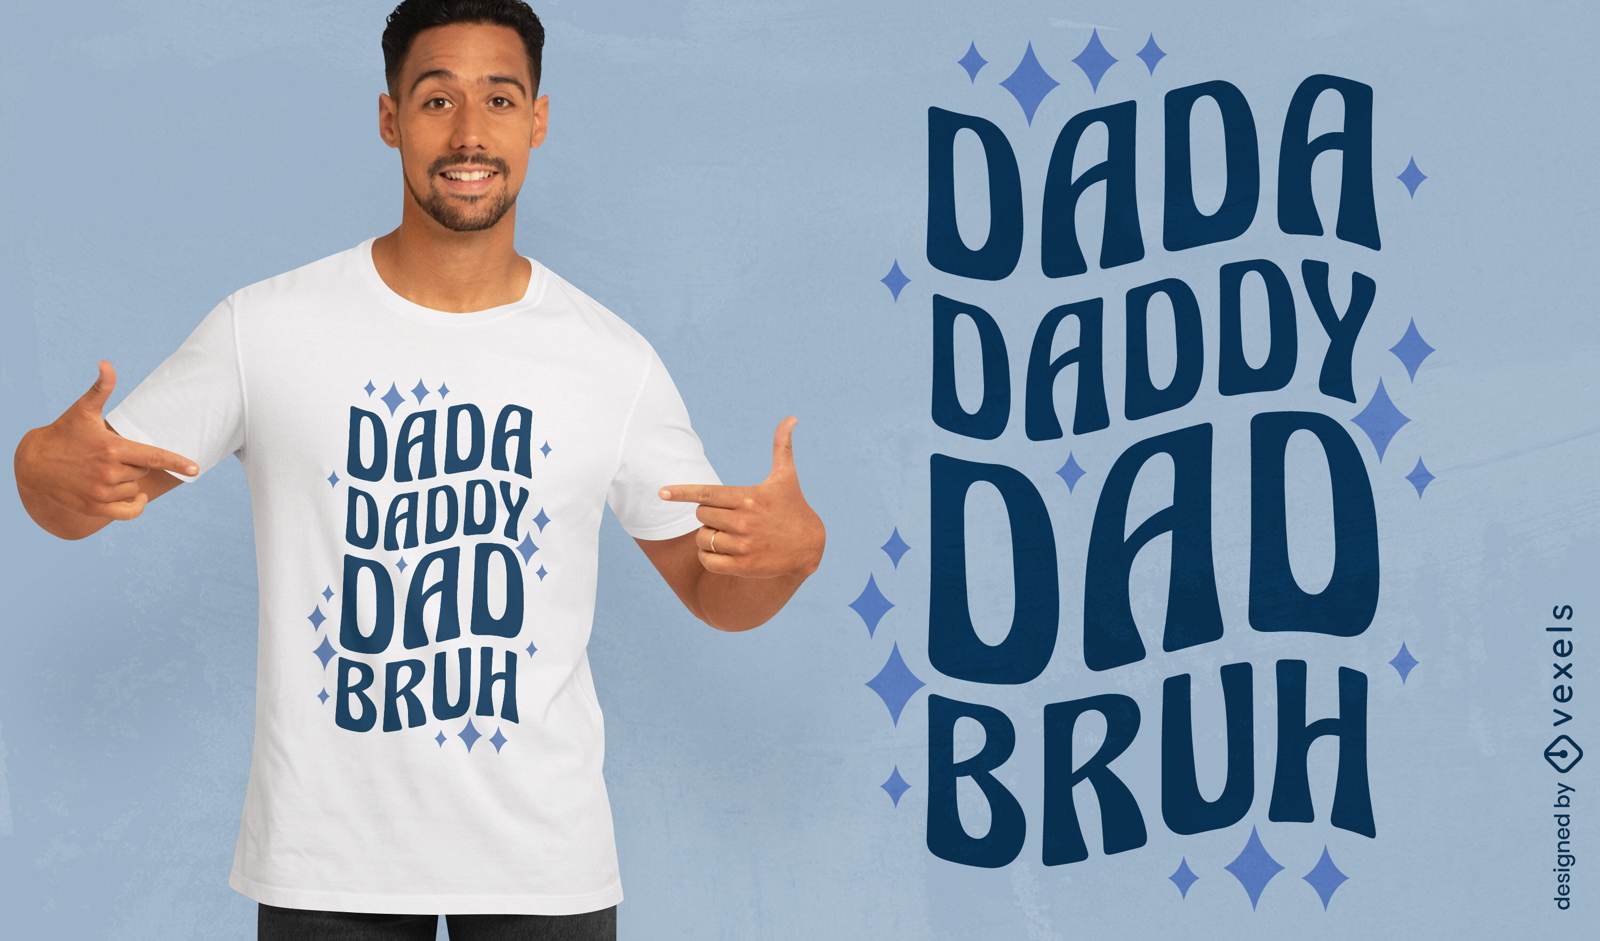 Daddy daddy dad t-shirt design